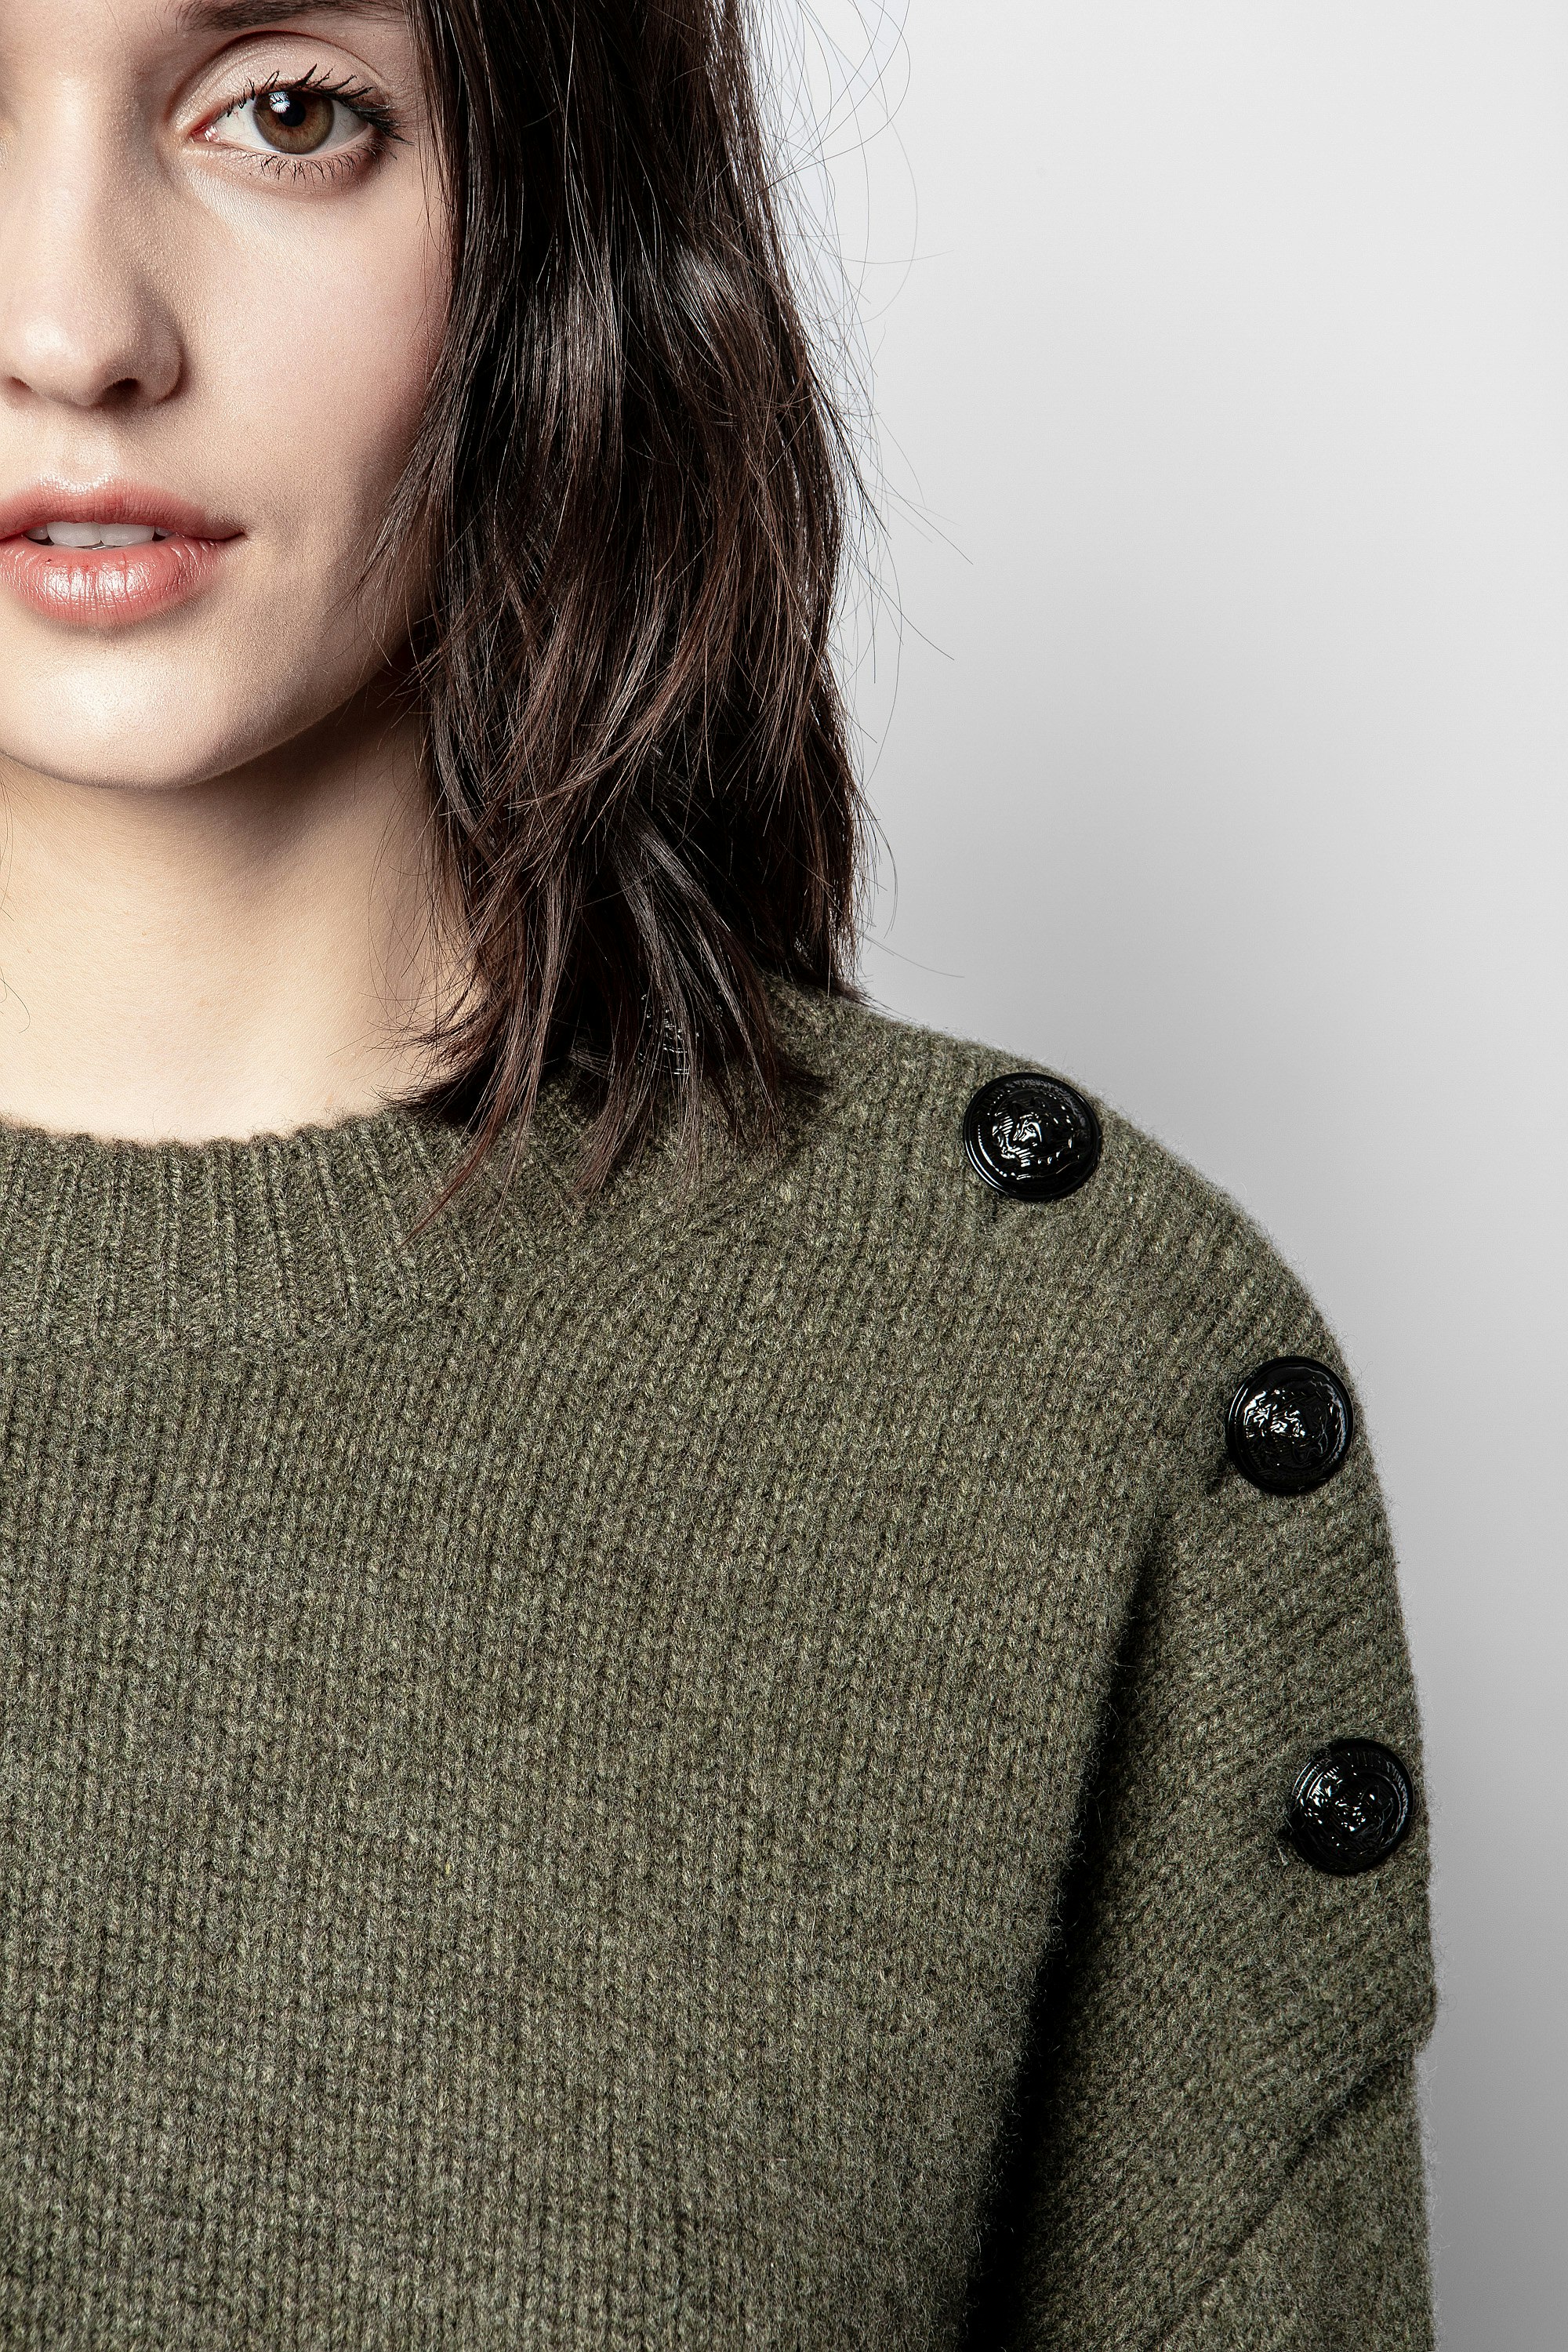 Malta Cashmere Sweater